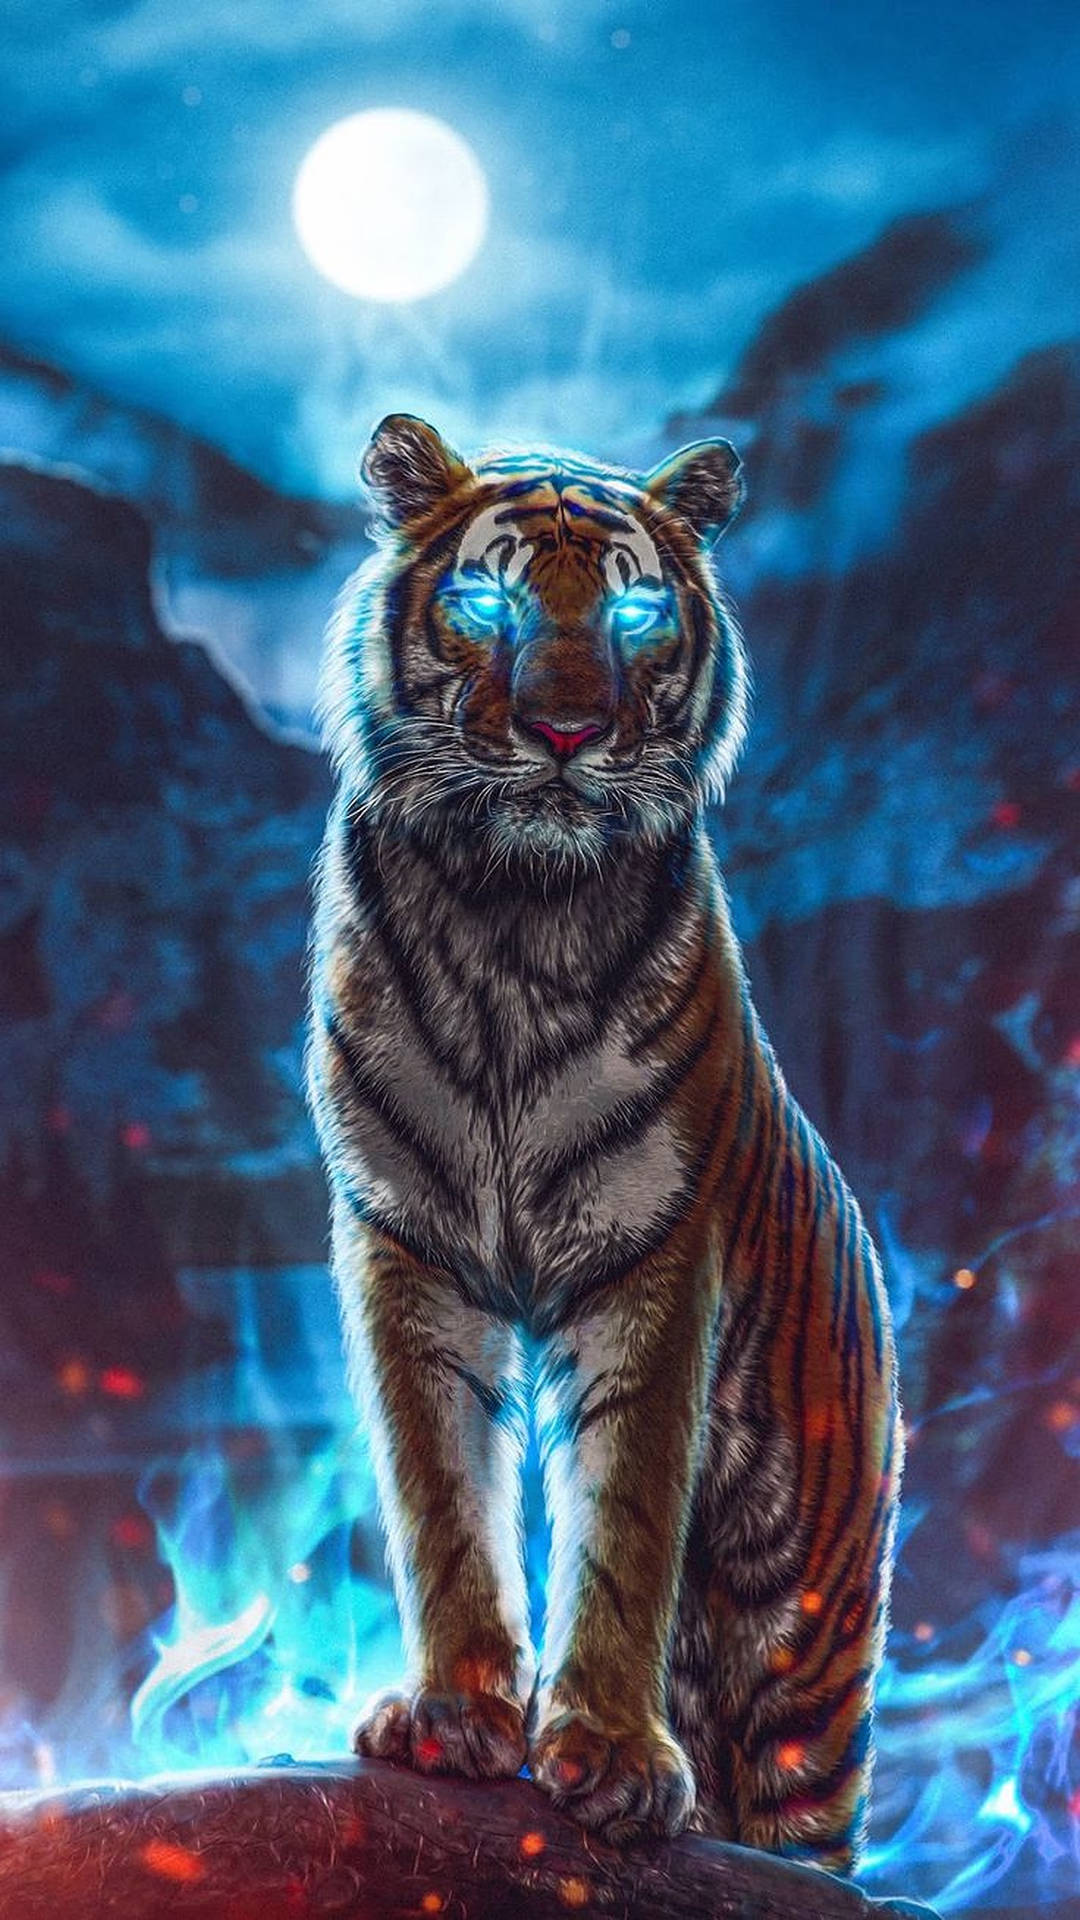 Wild Animal Cyan Blue Tiger Wallpaper